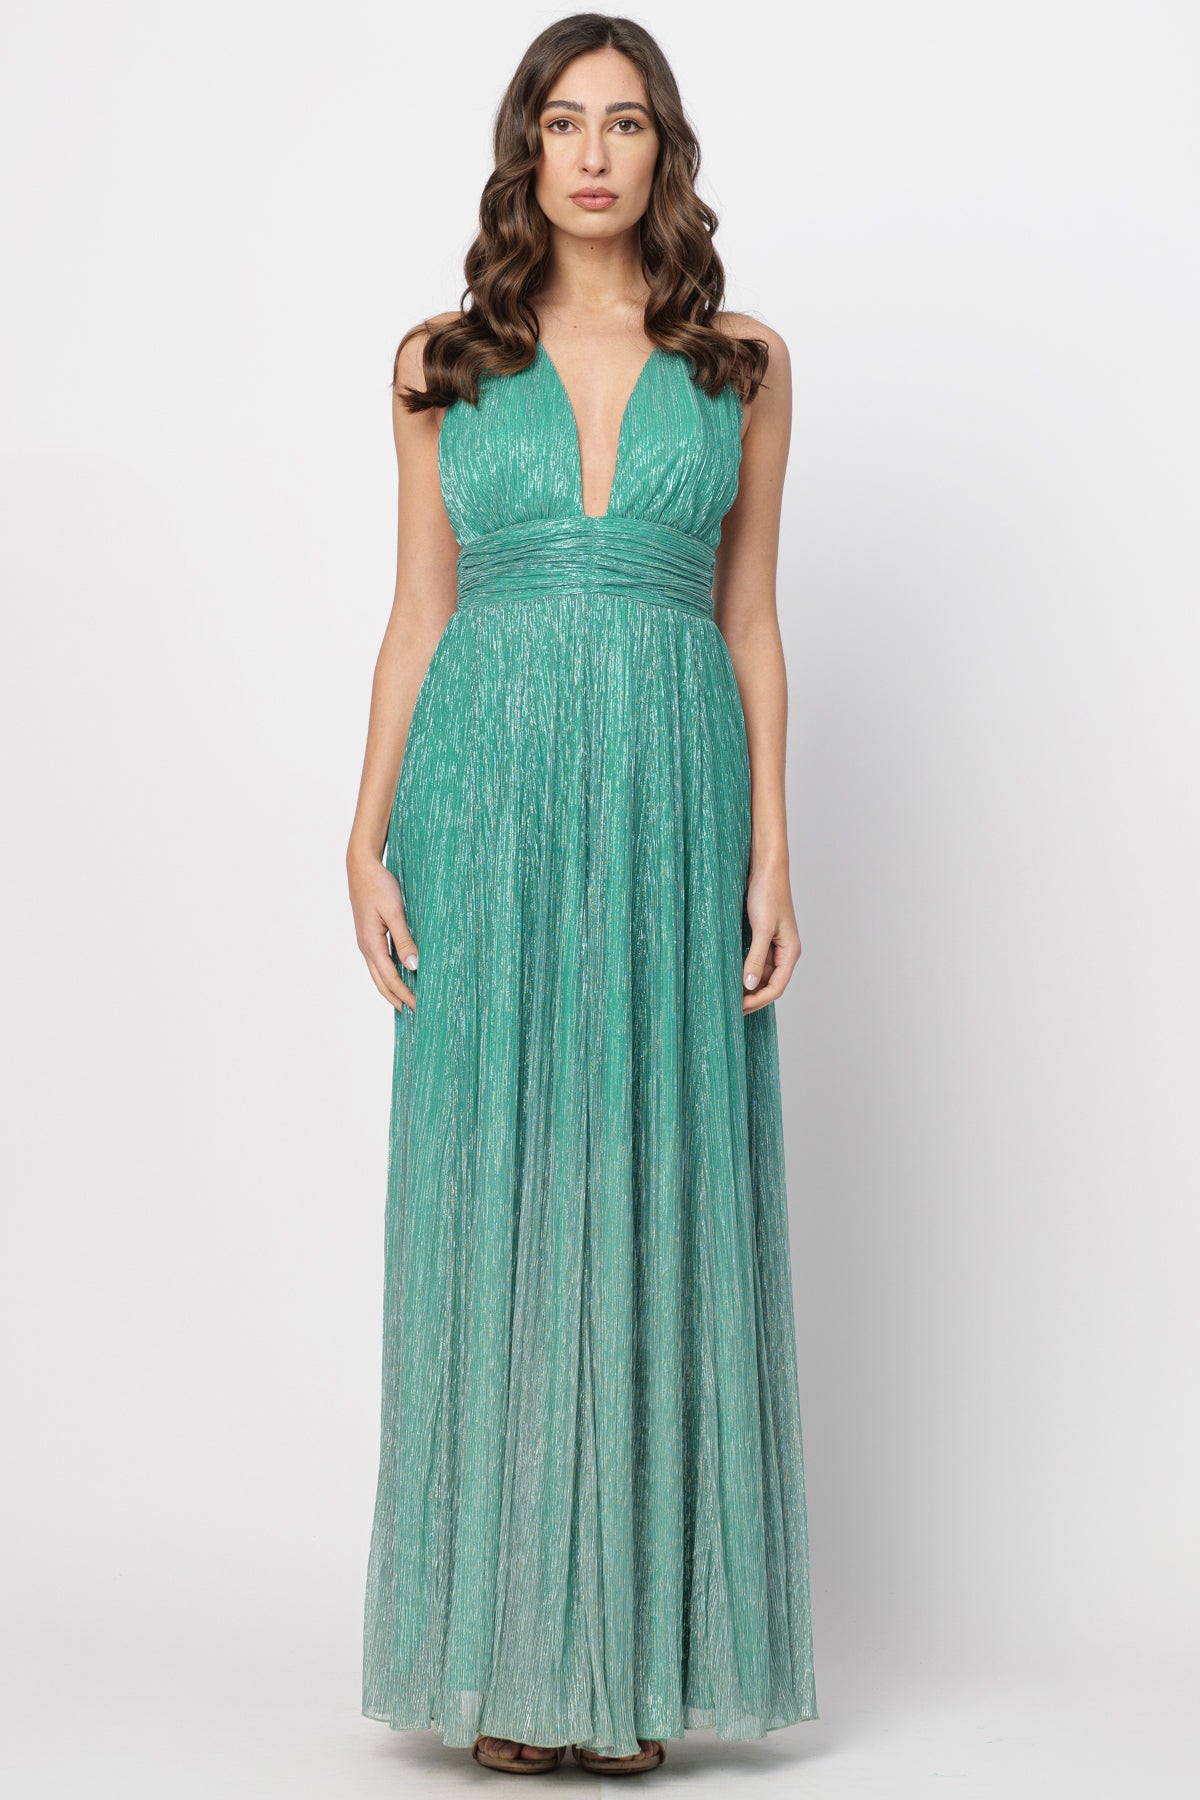 Emerald Degrade Dress